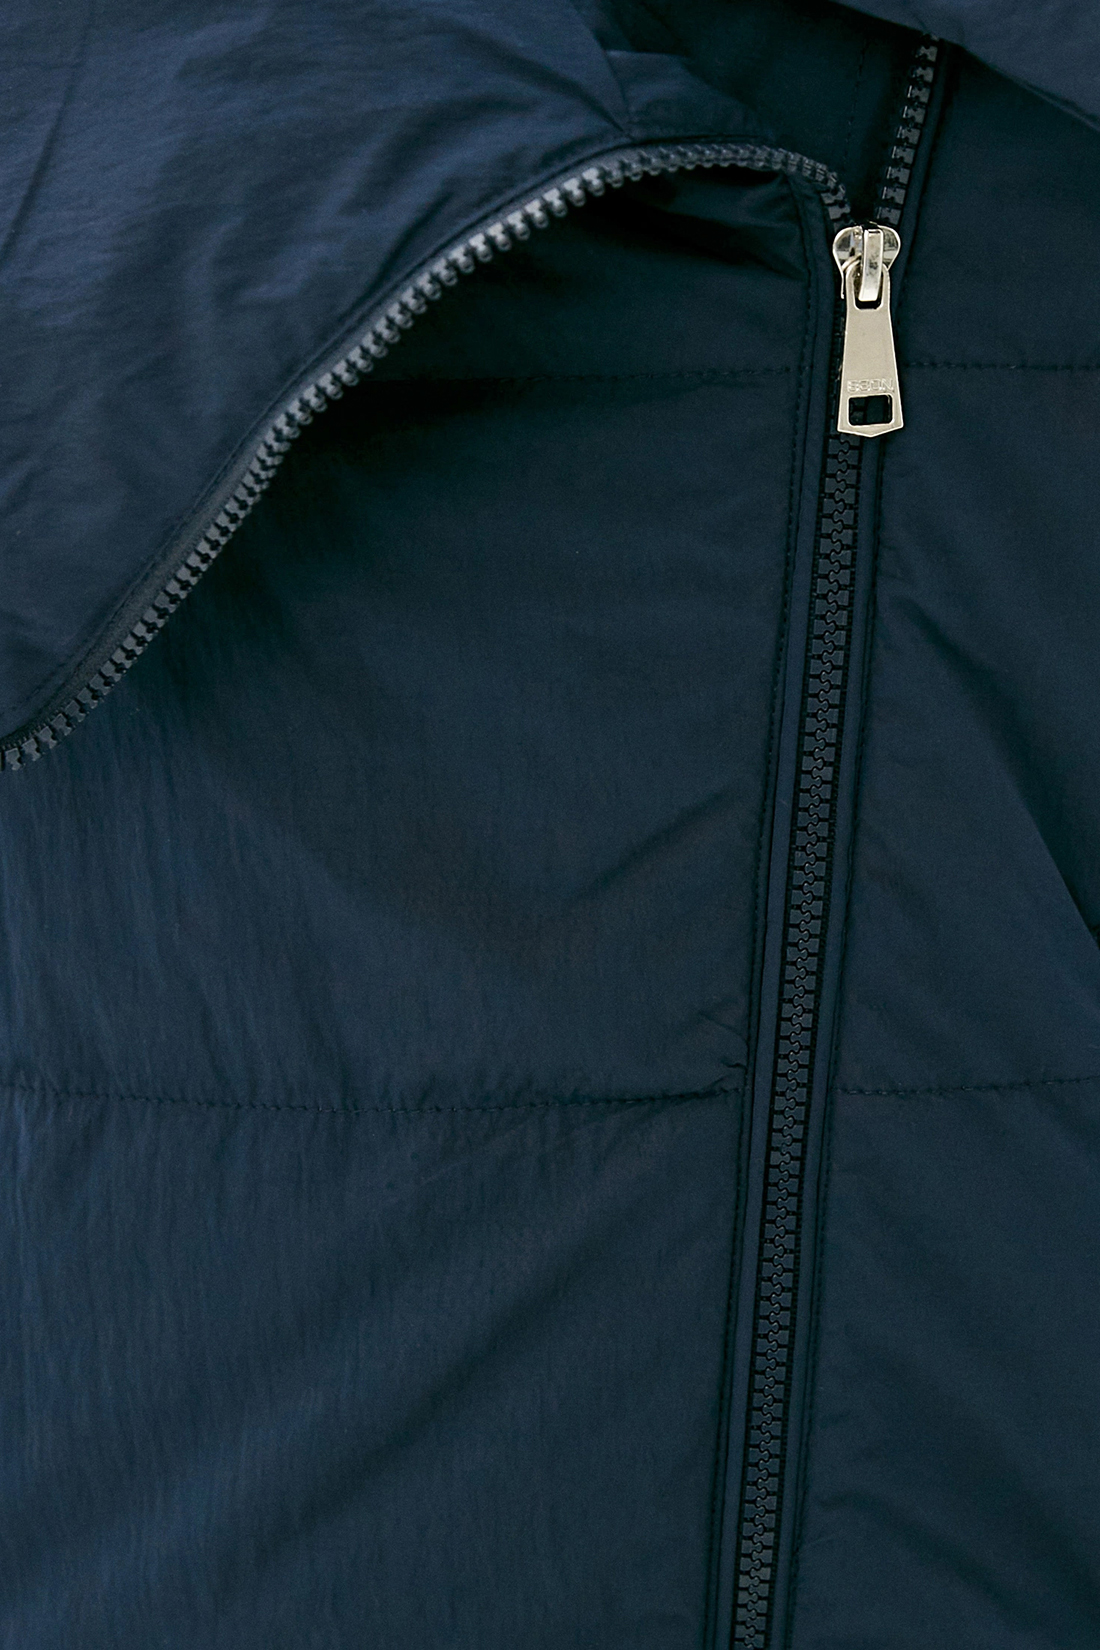 Куртка (арт. baon B030514), размер XL, цвет синий Куртка (арт. baon B030514) - фото 3